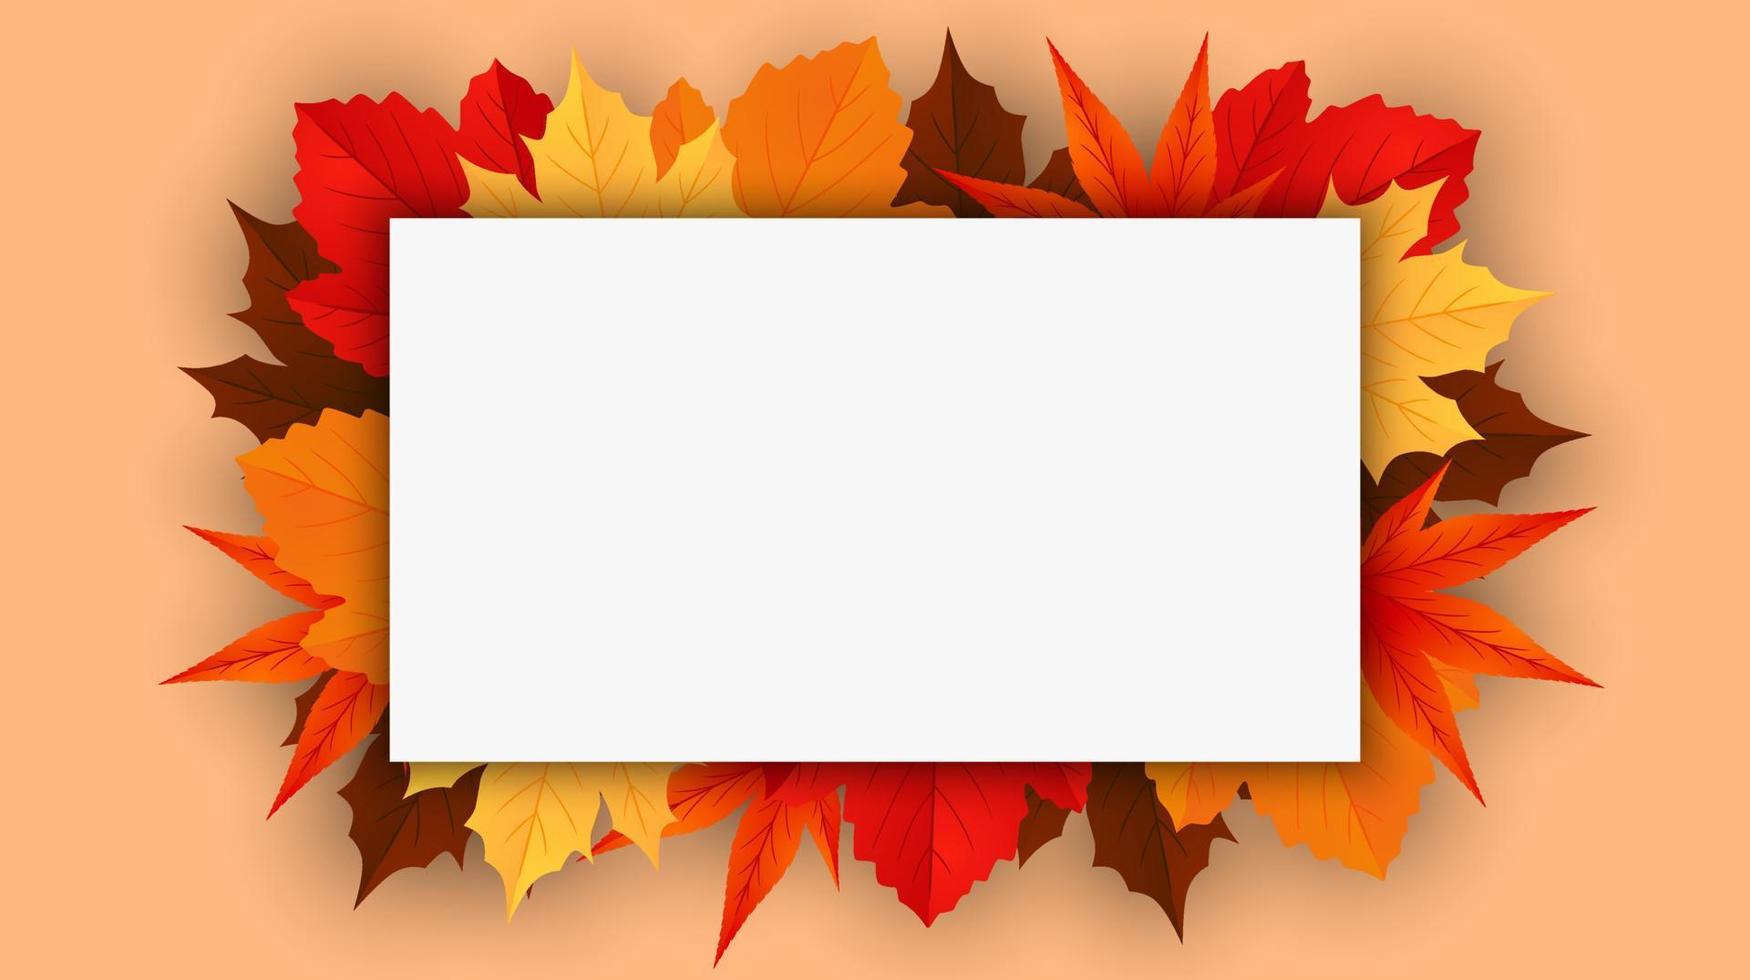 fundo de outono outono com folhas de plátano douradas, vermelhas e laranja isoladas no fundo com espaço para texto. ilustração vetorial vetor